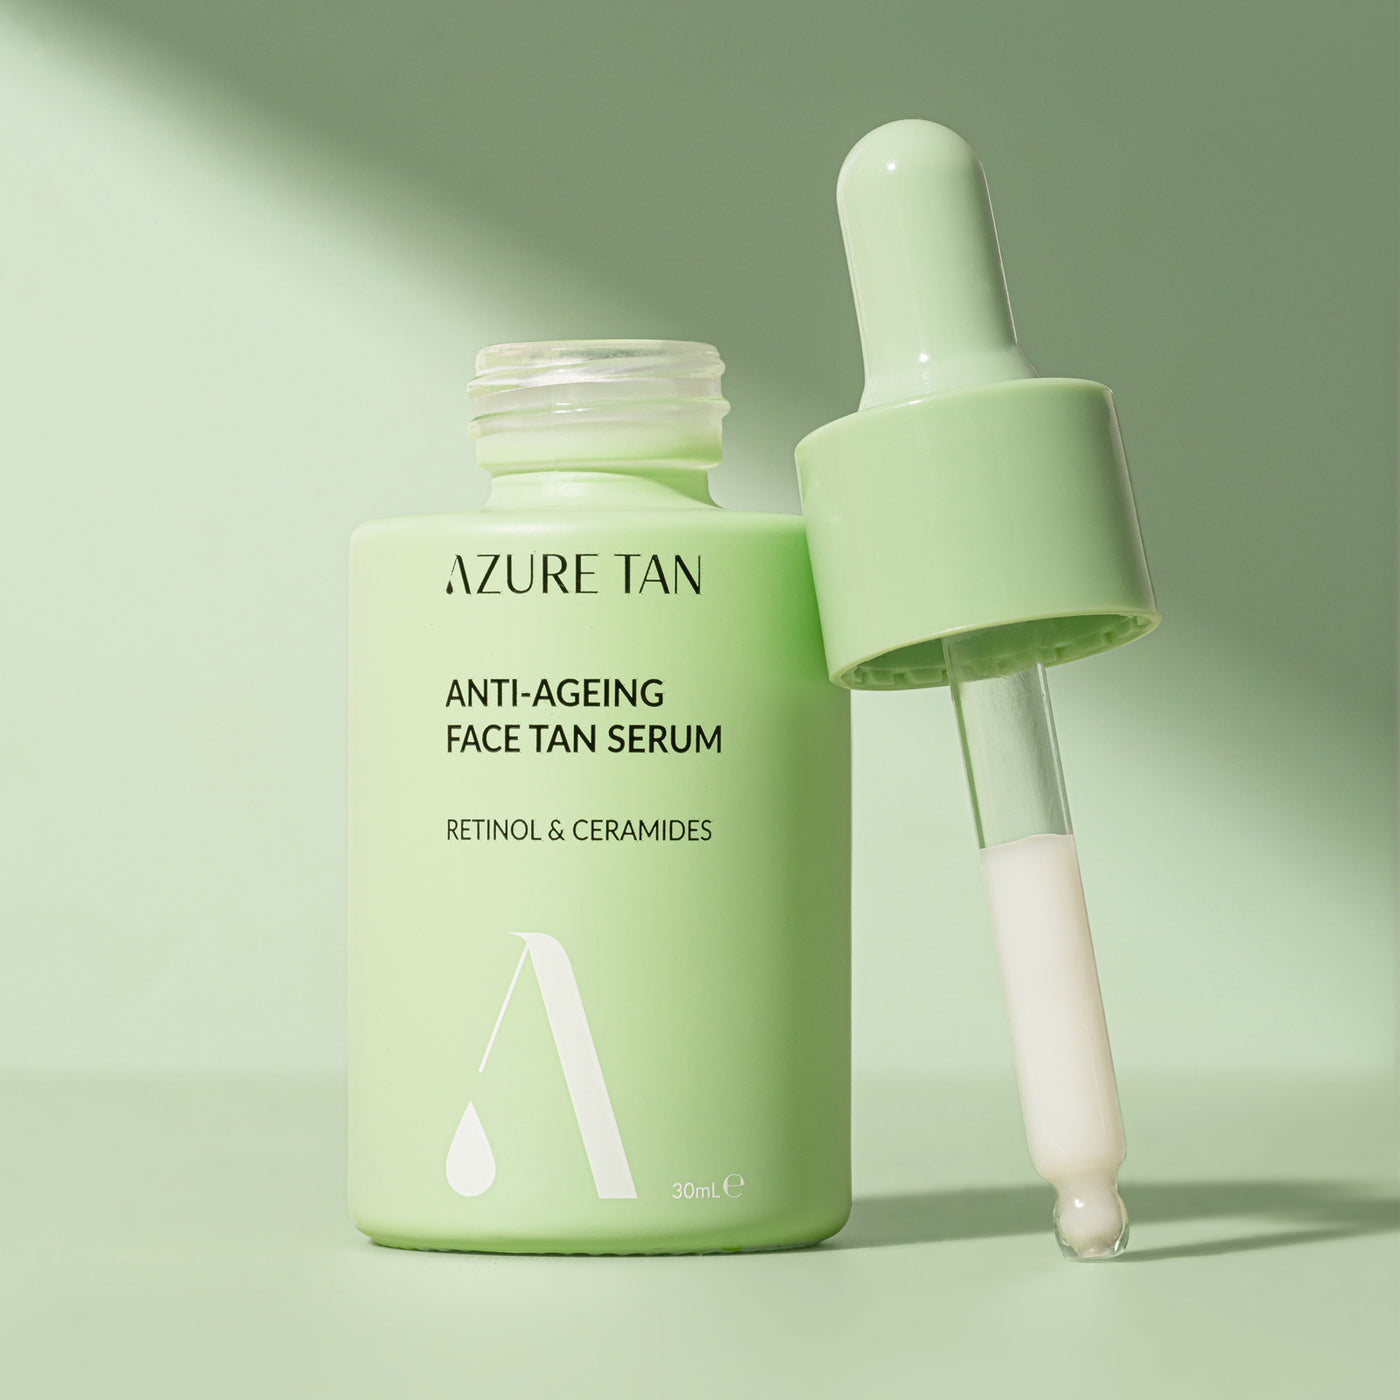 Azure Tan Anti-Ageing Tan Serum (30ml) styled